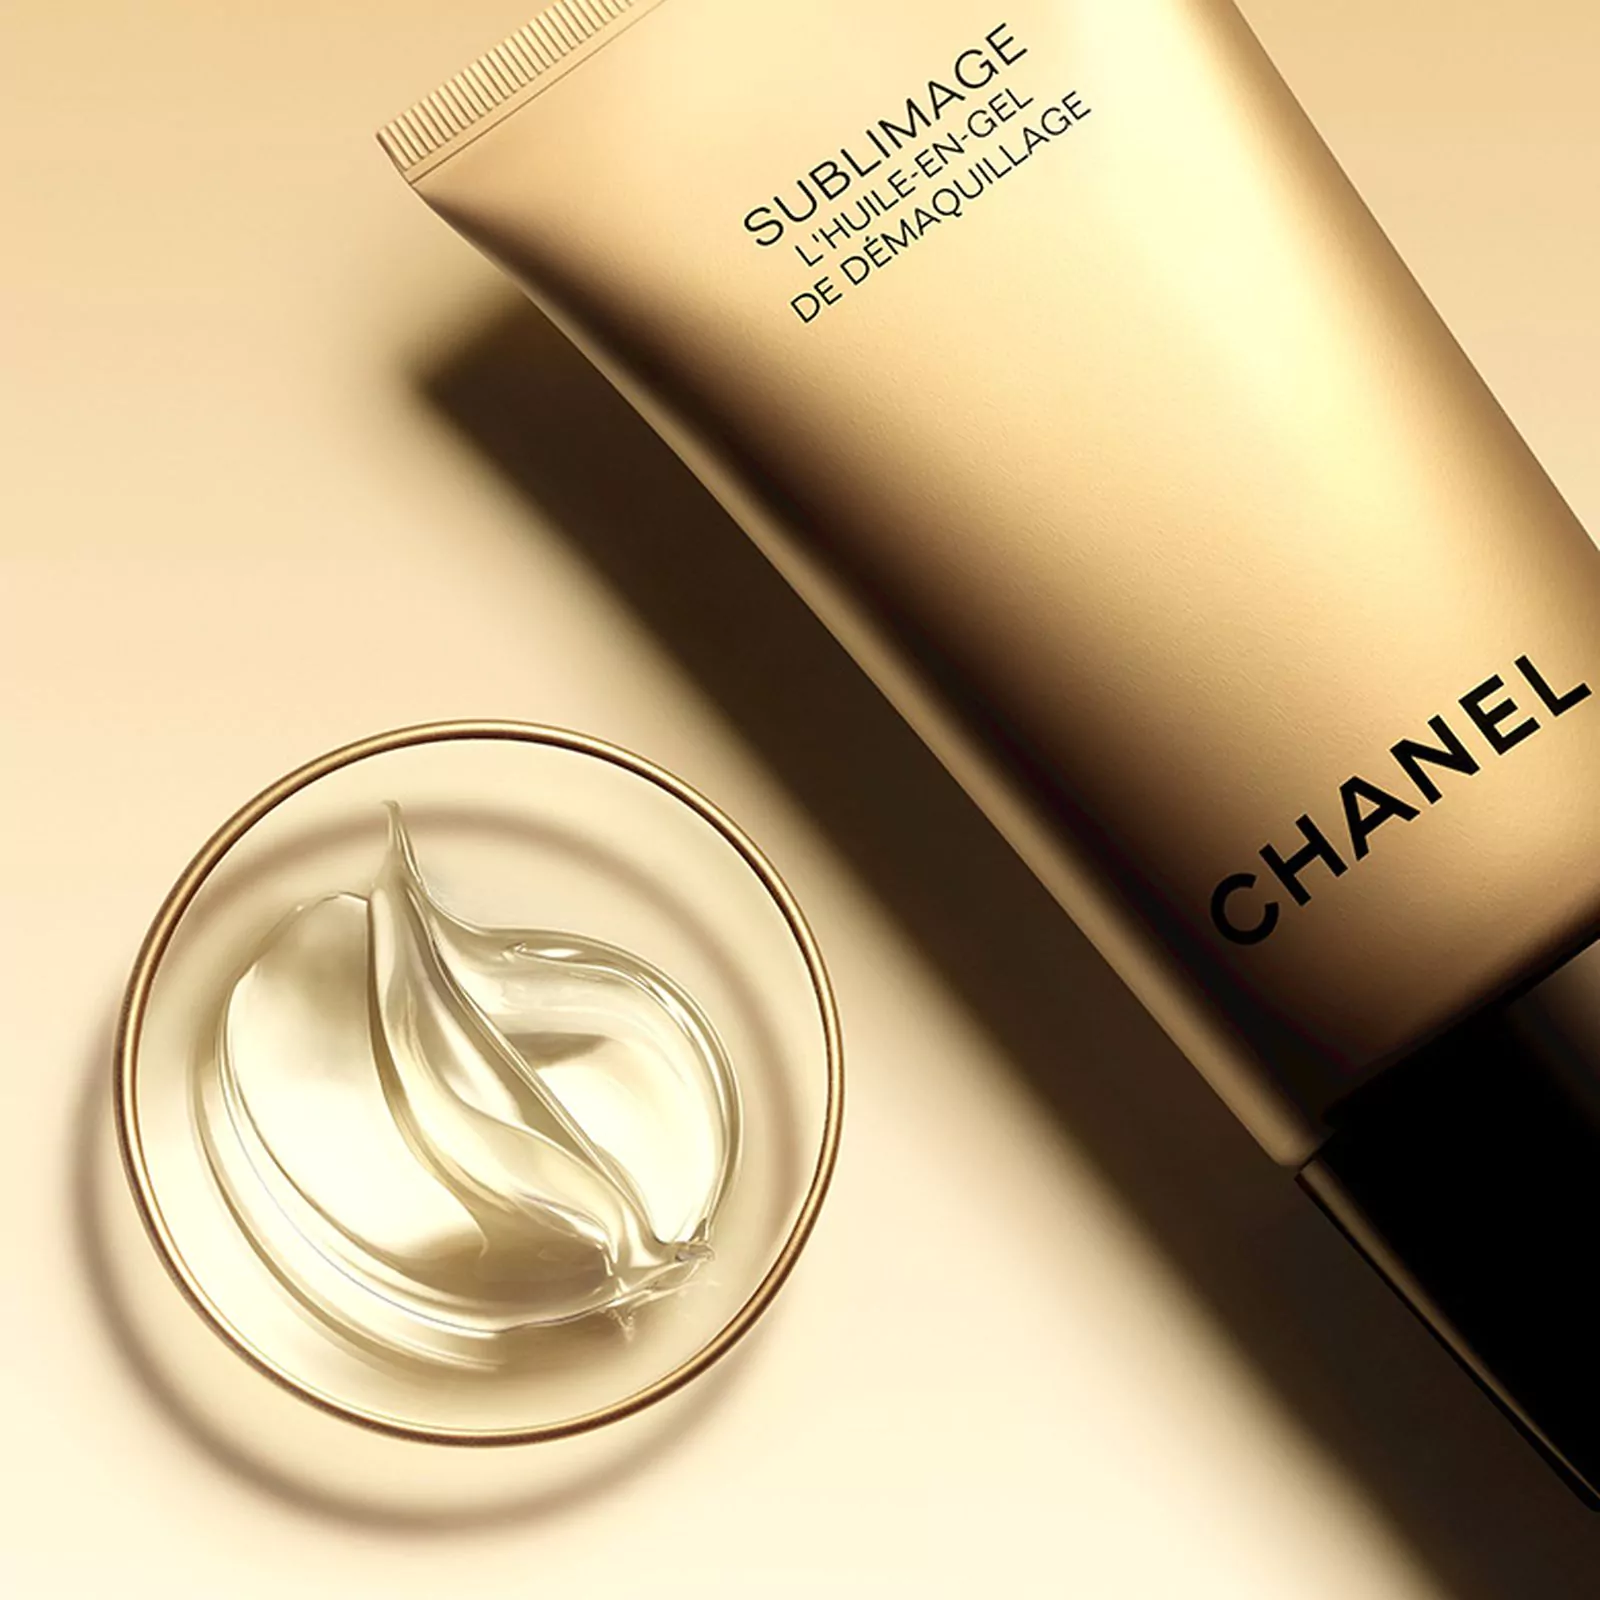 Очищающее гель-масло для снятия макияжа с лица и глаз Chanel Sublimage, фото 1